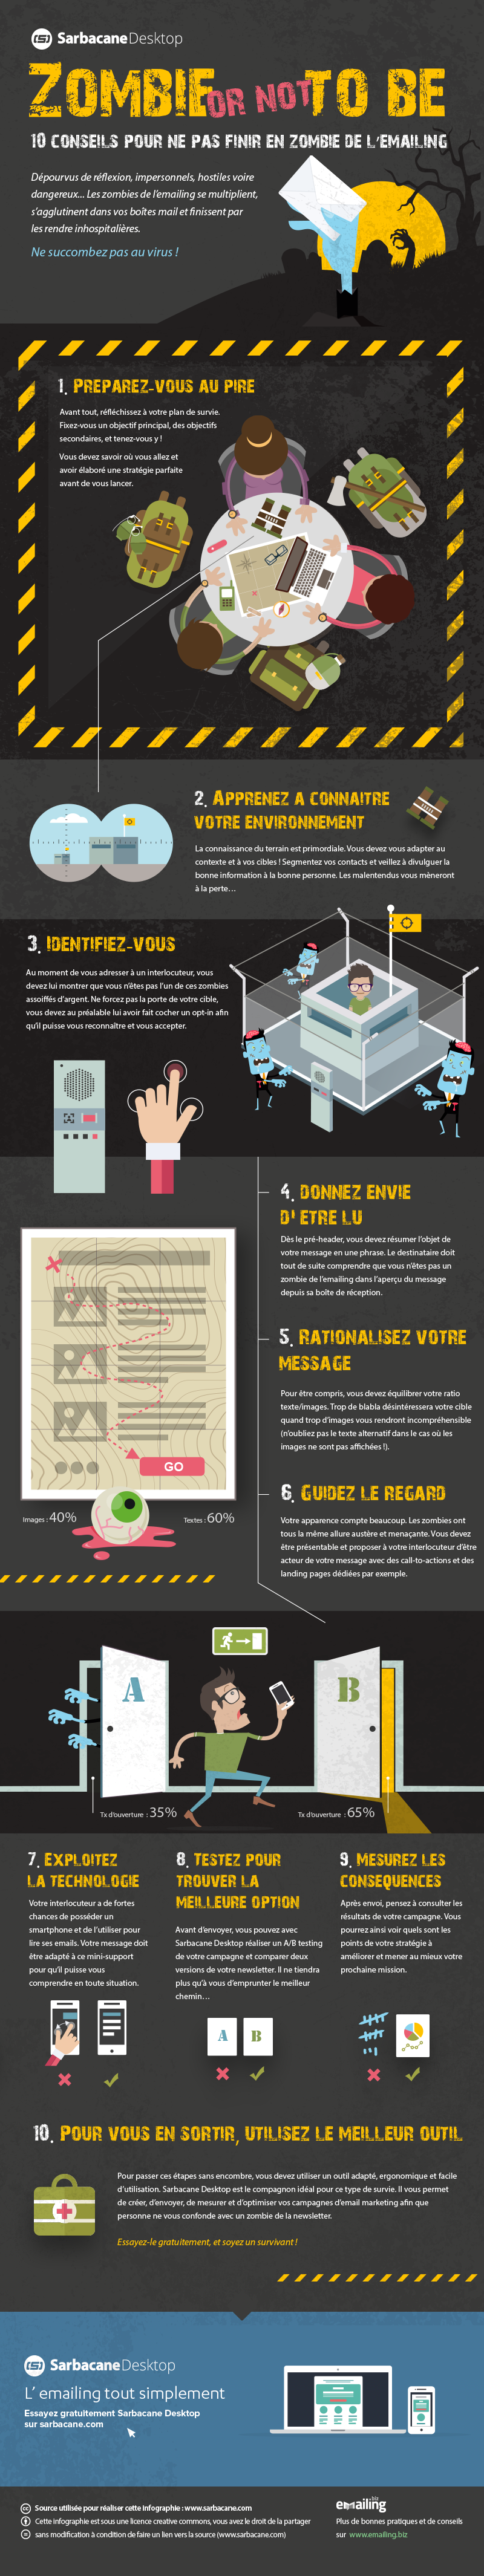 Infographie Emailing Marketing Conseils - Sarbacane